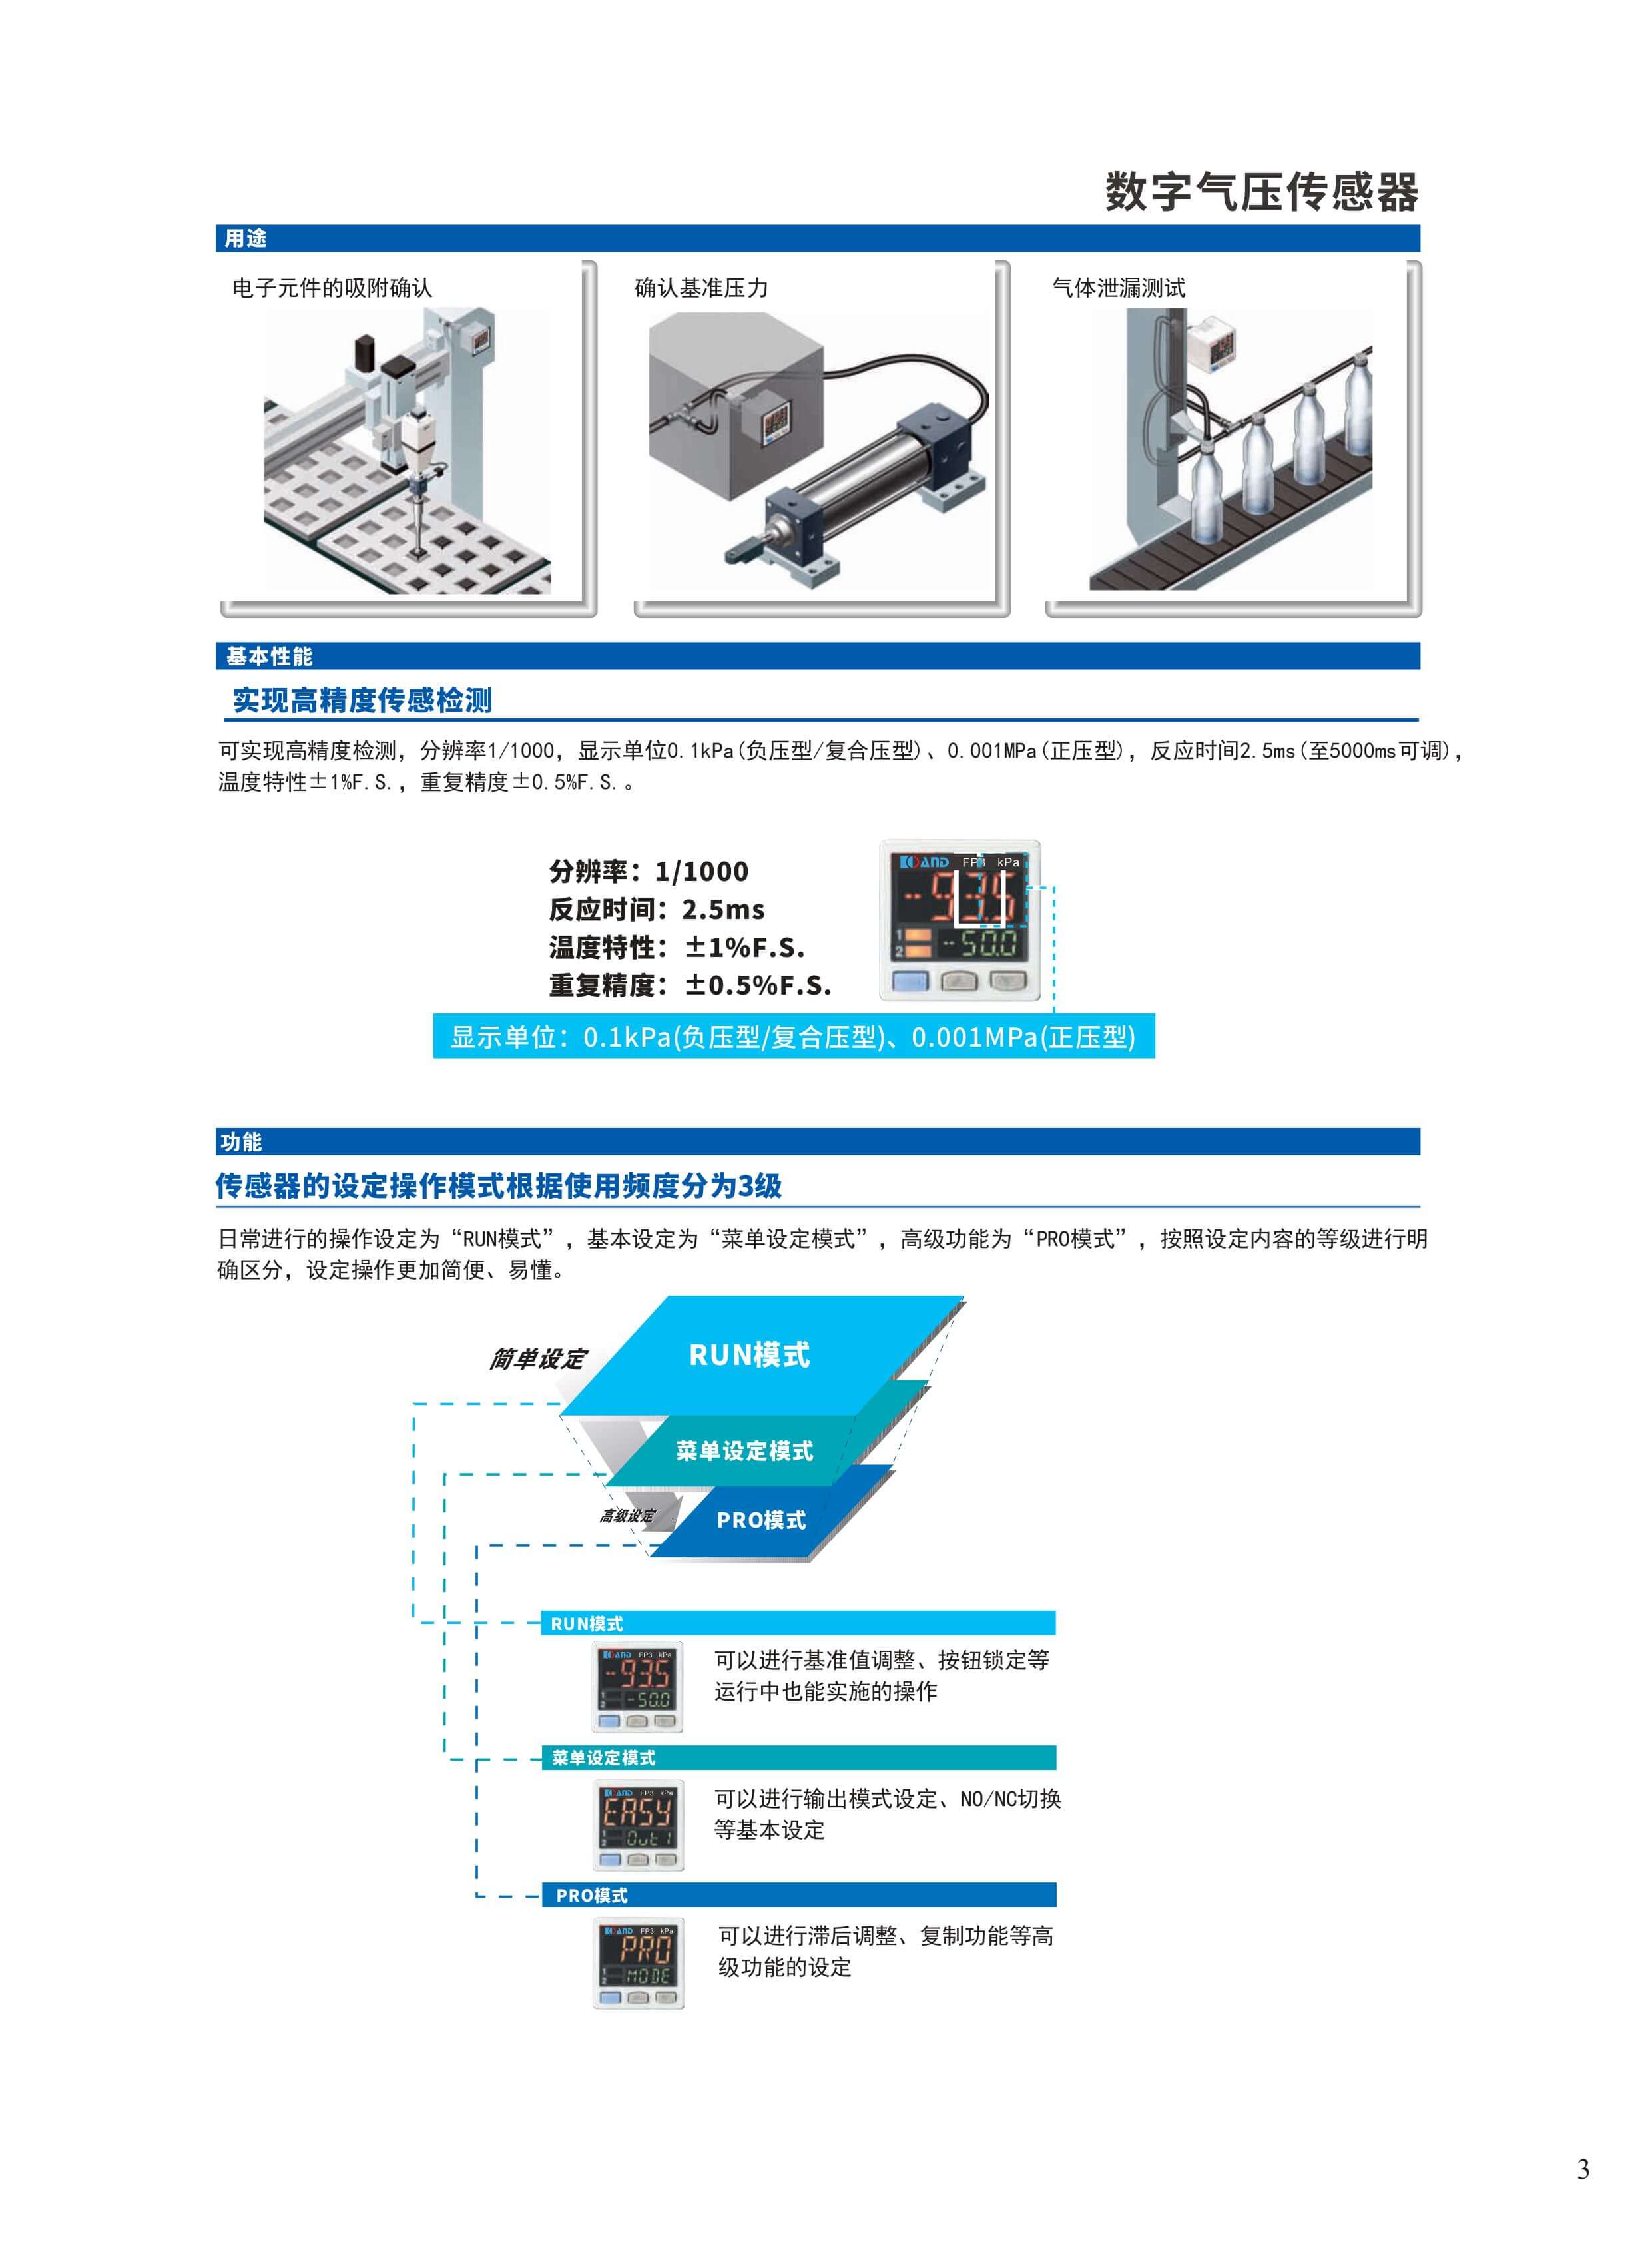 四关节-陀螺仪-深圳市艾而特工业自动化设备有限公司